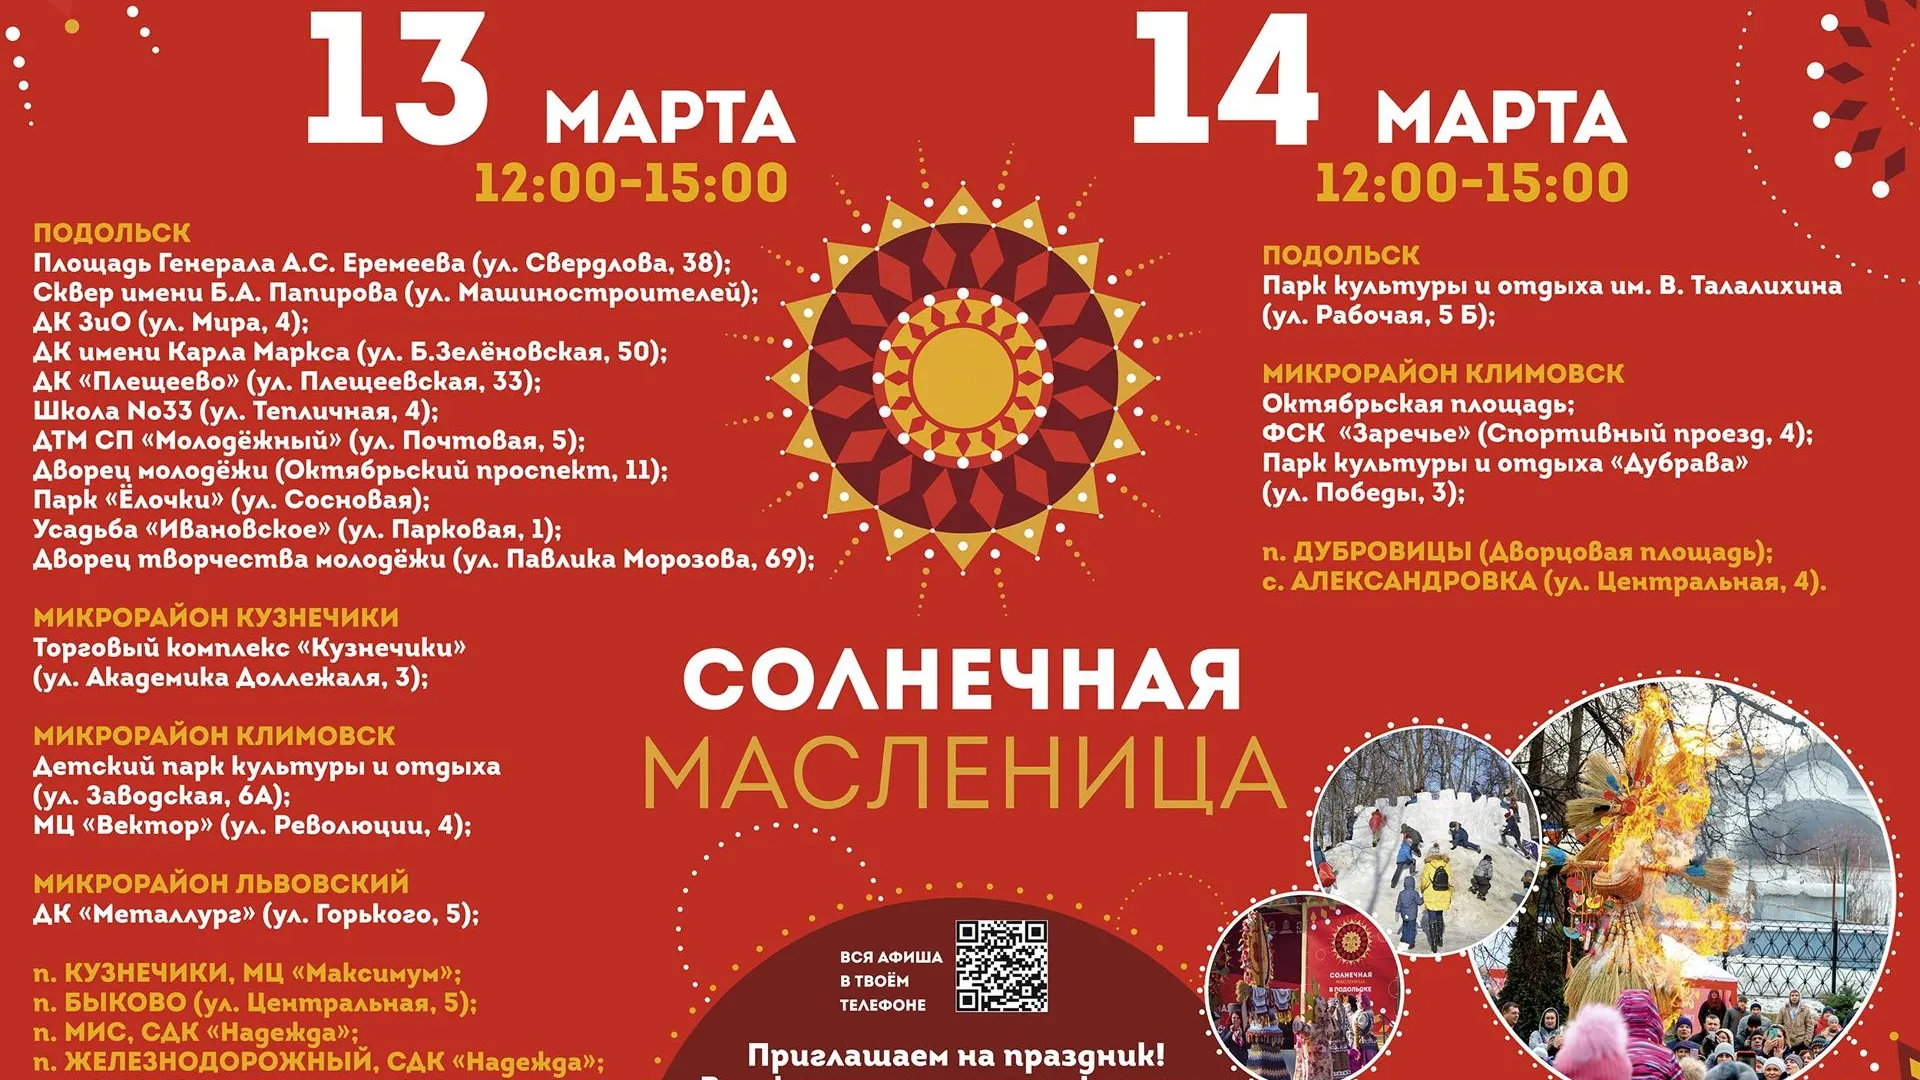 Масленичные гулянья пройдут в Подольске 13 и 14 марта